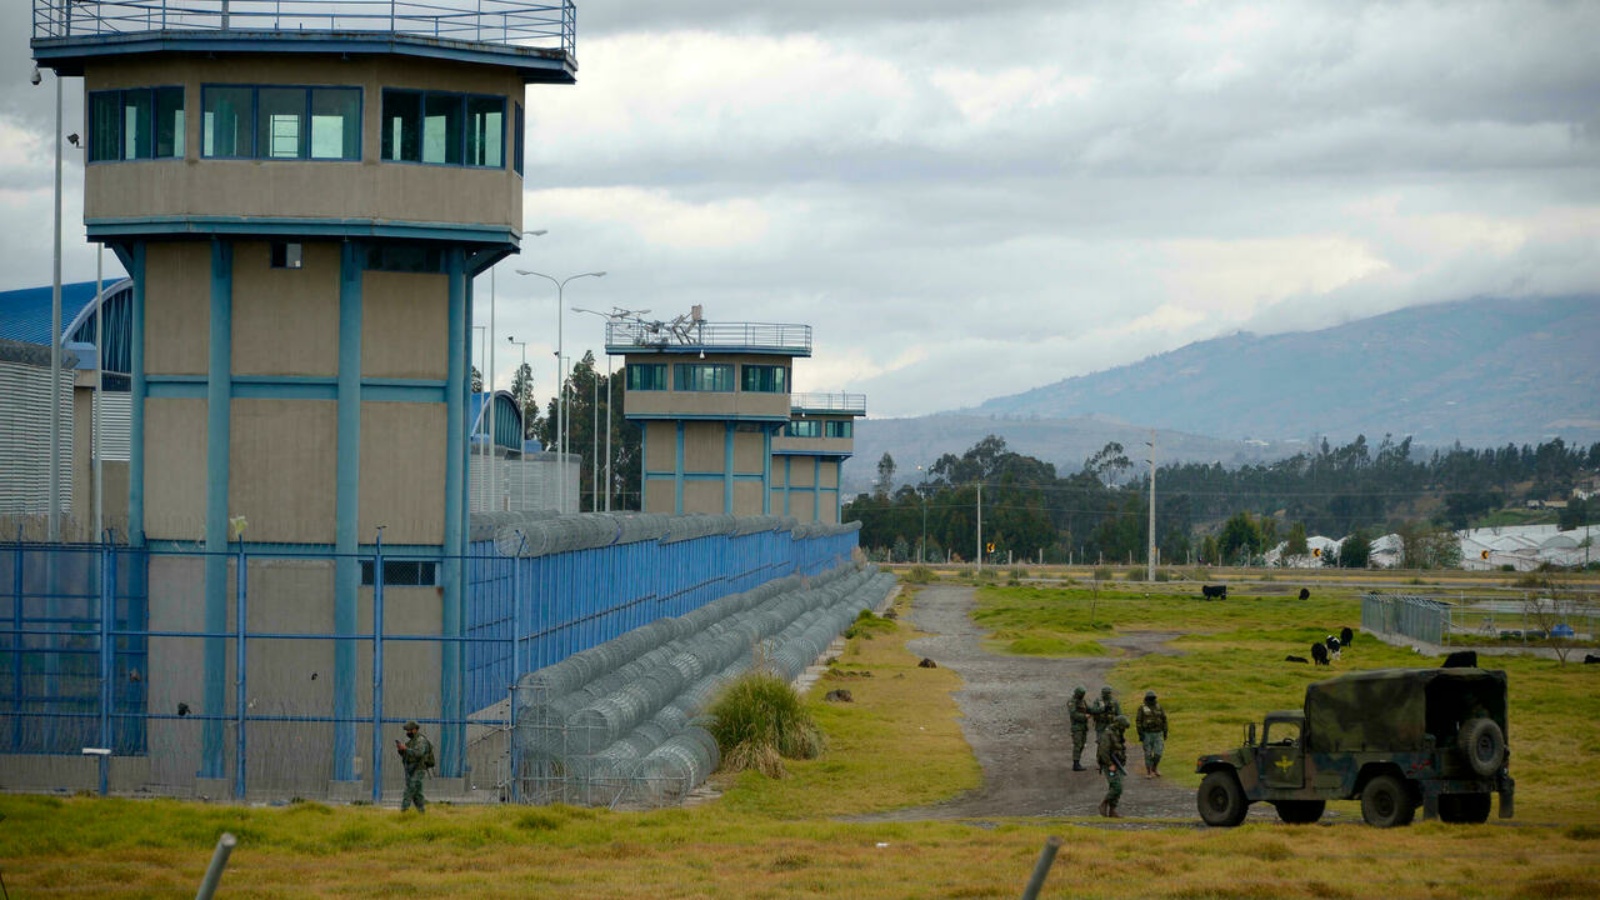 جنود يقومون بدوريات في محيط سجن سييرا سنترو نورتي في لاتاكونغا، الإكوادور، بعد أعمال شغب مميتة في سجنين آخرين.